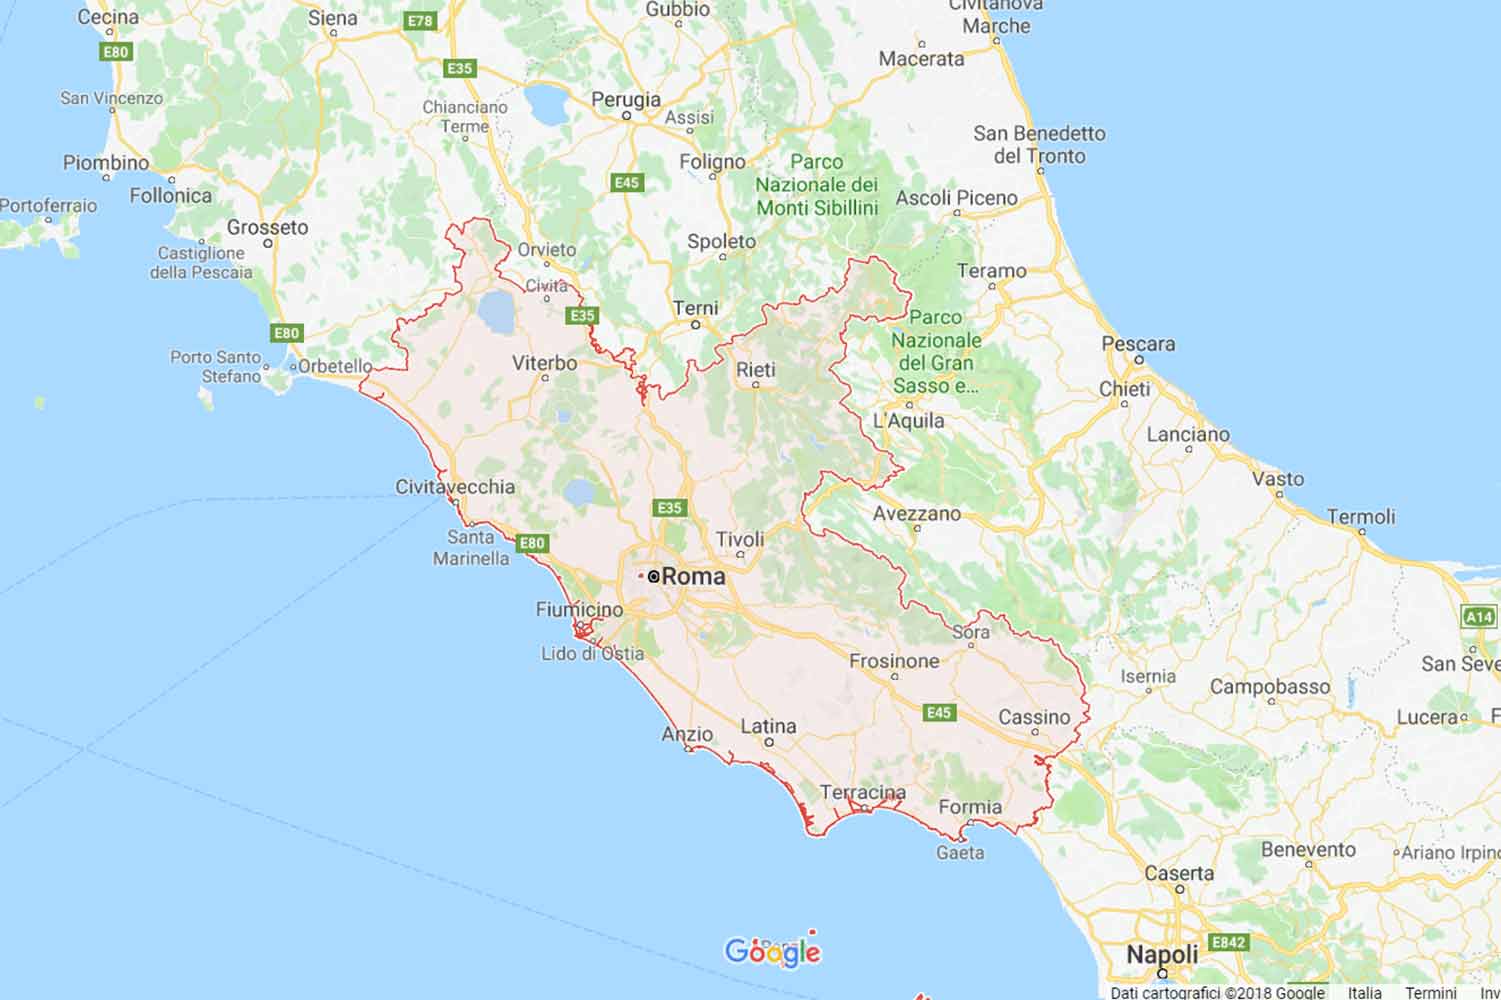 Lazio - Rieti - Poggio Mirteto Preventivi Veloci google maps